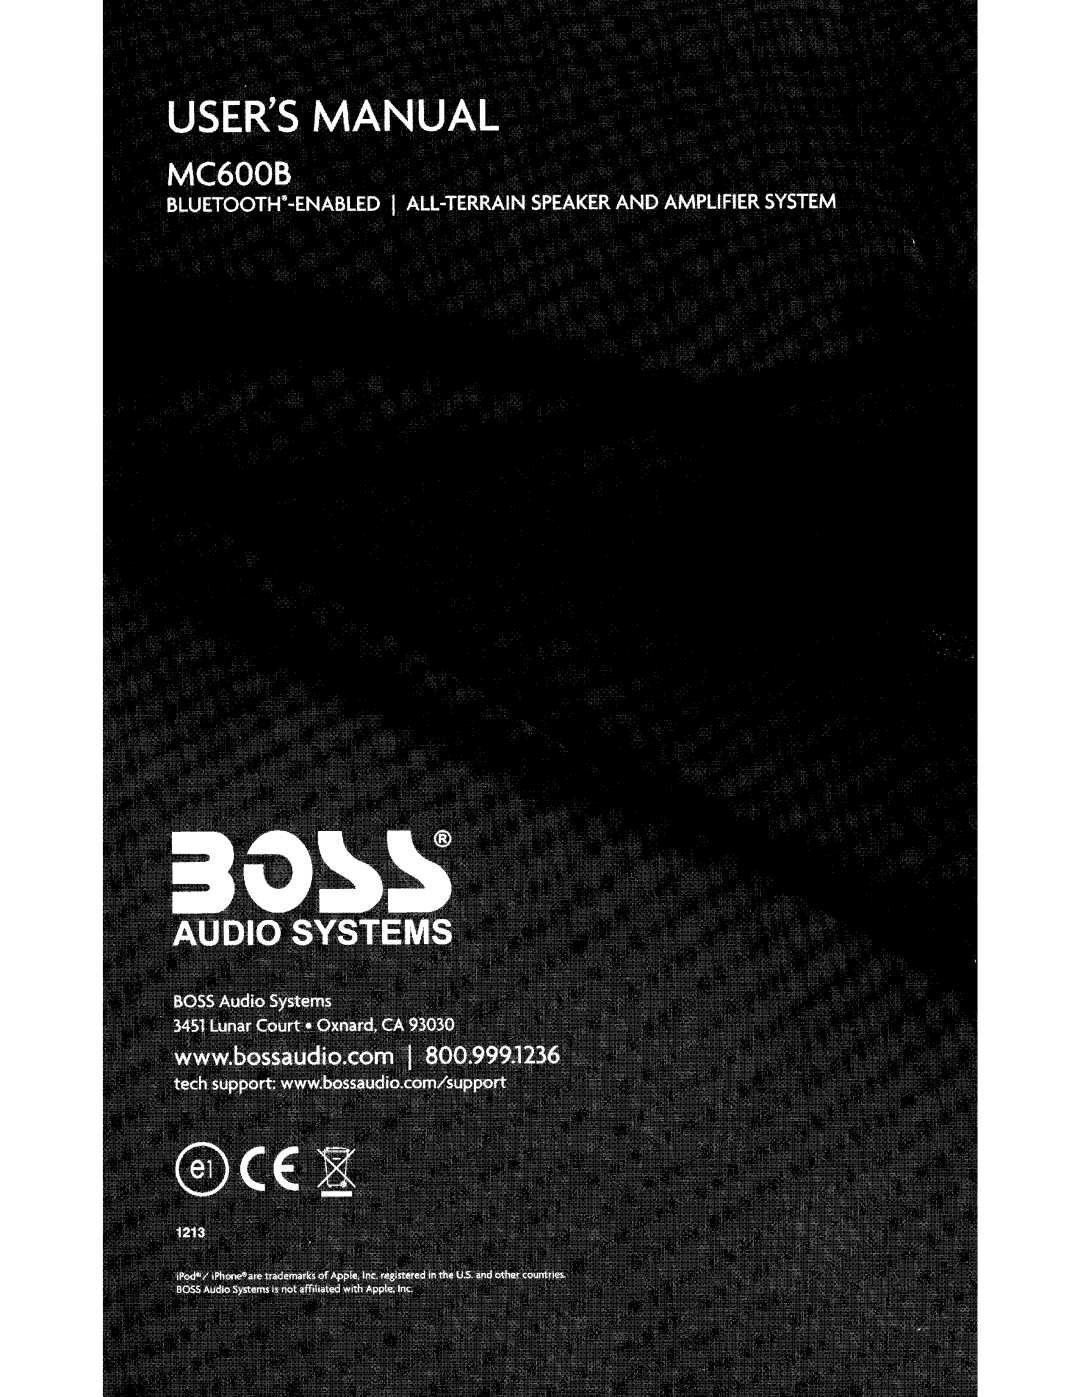 Boss Audio Systems MC600B user manual 